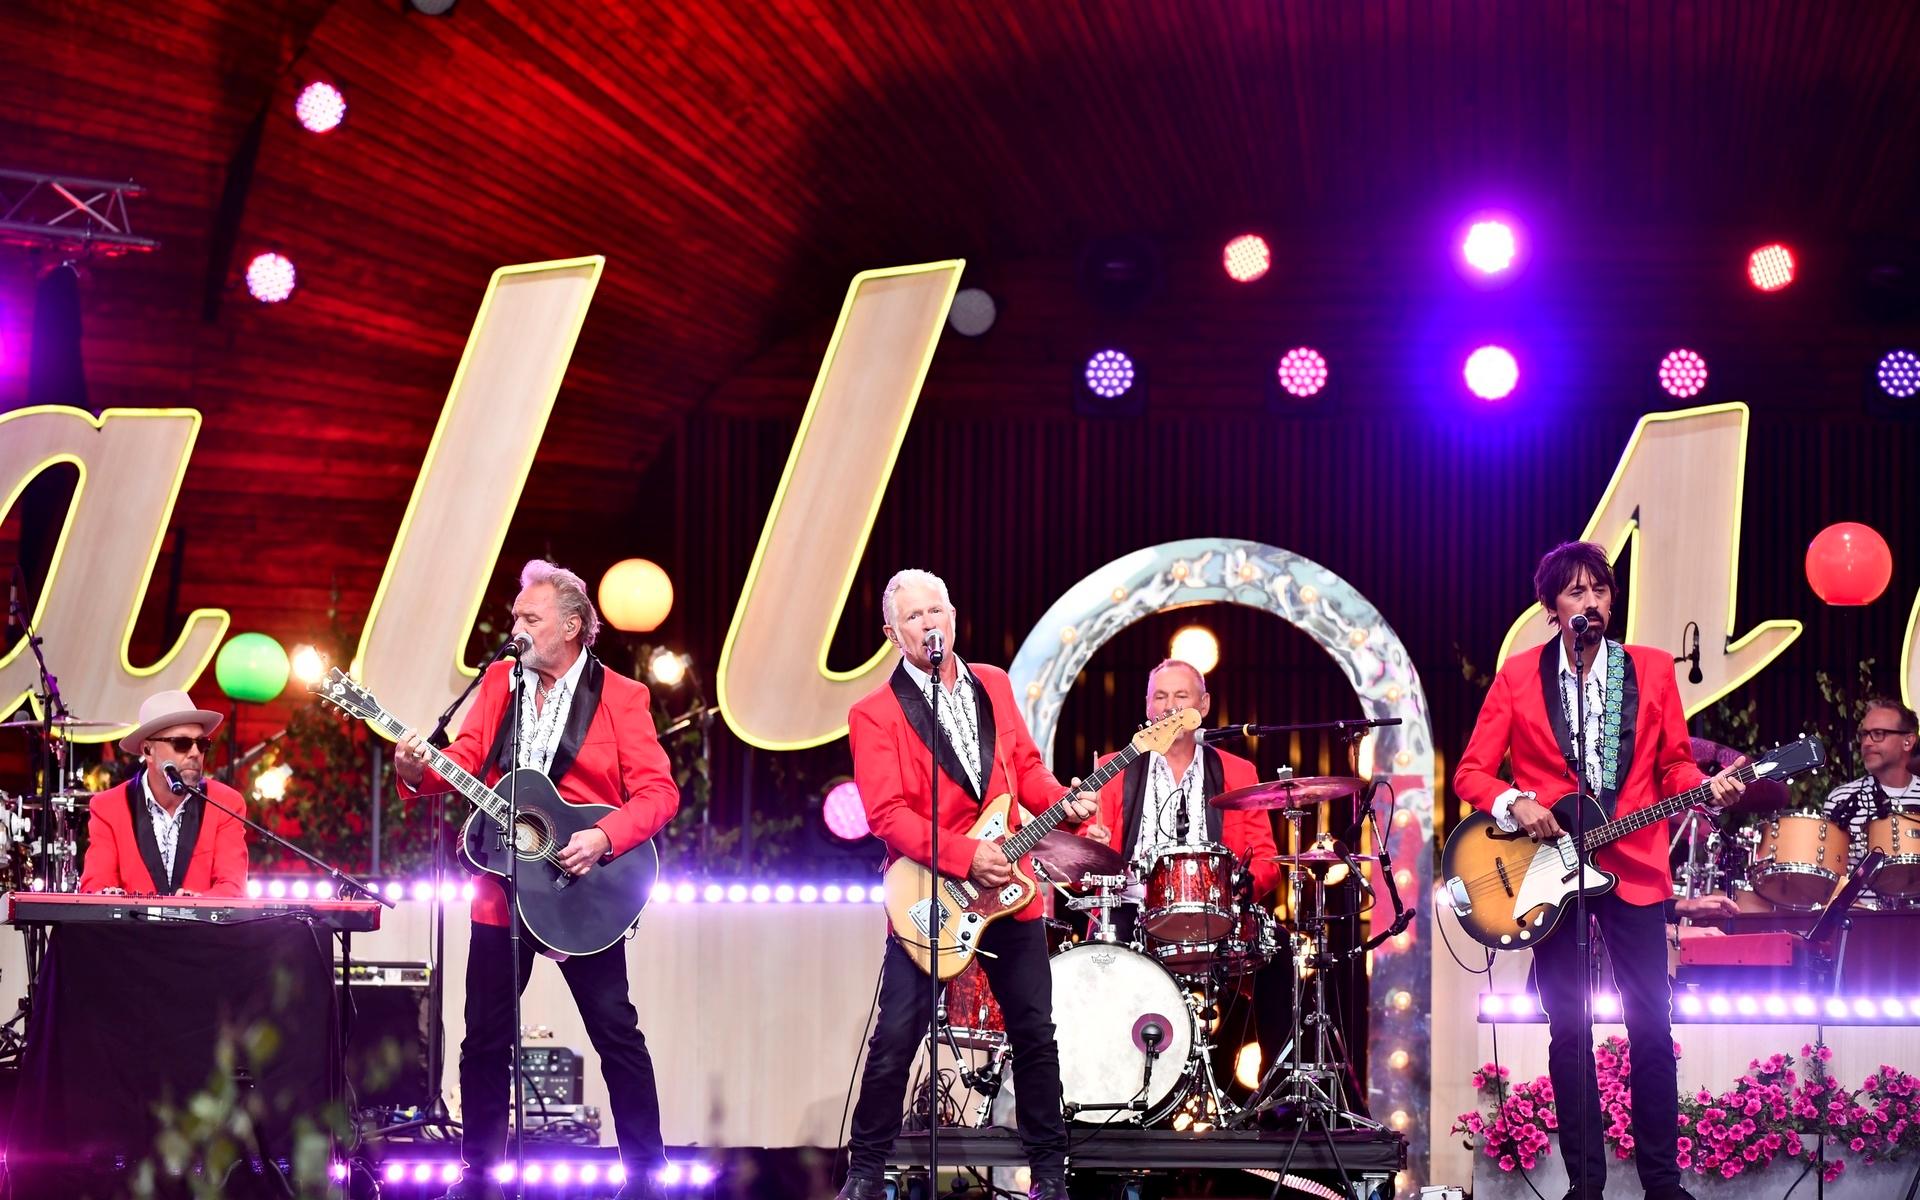 The Boppers hade en rockig julturné 2019 som man nu gör en uppdaterad version av.